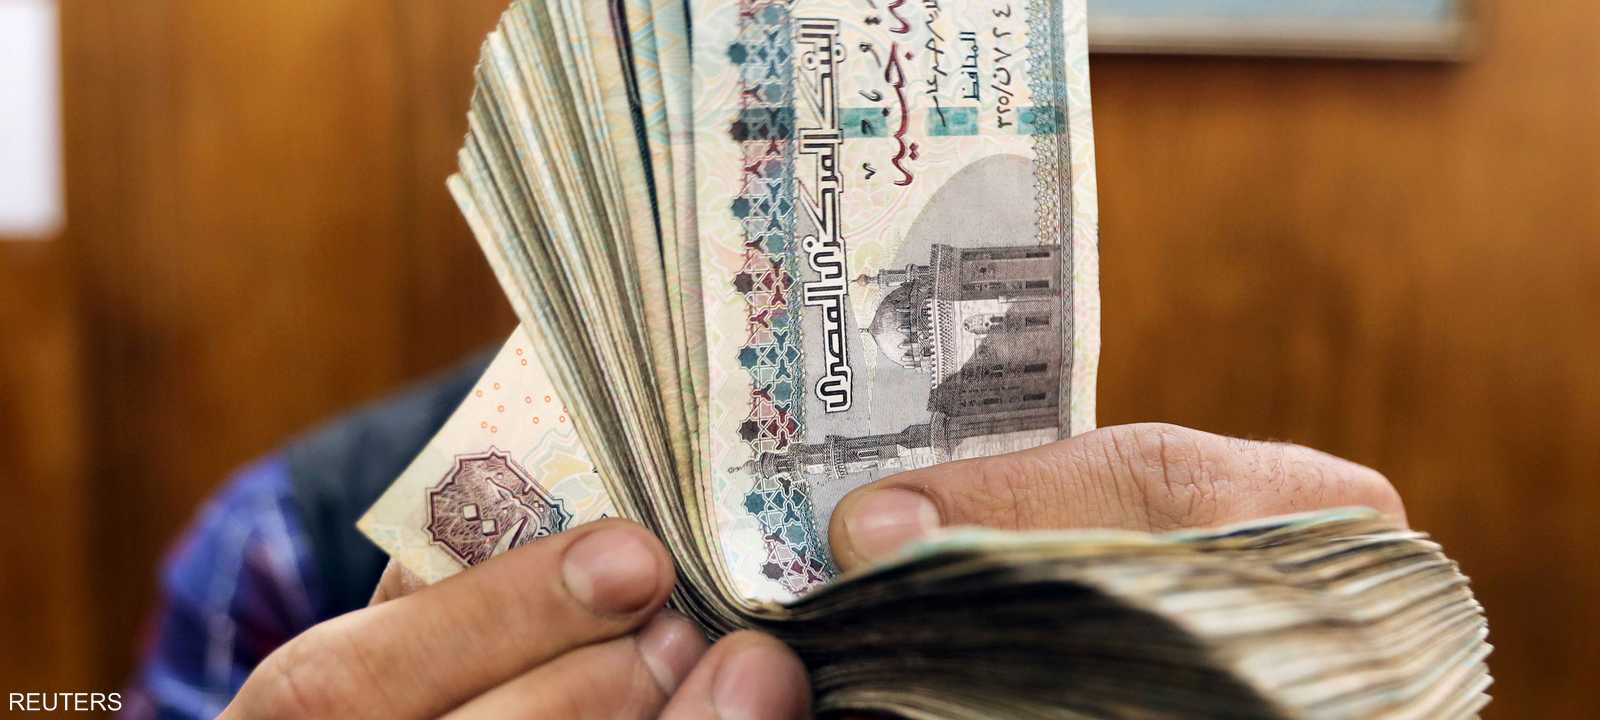 أزمة كورونا أثرت على سعر الصرف للجنيه المصري